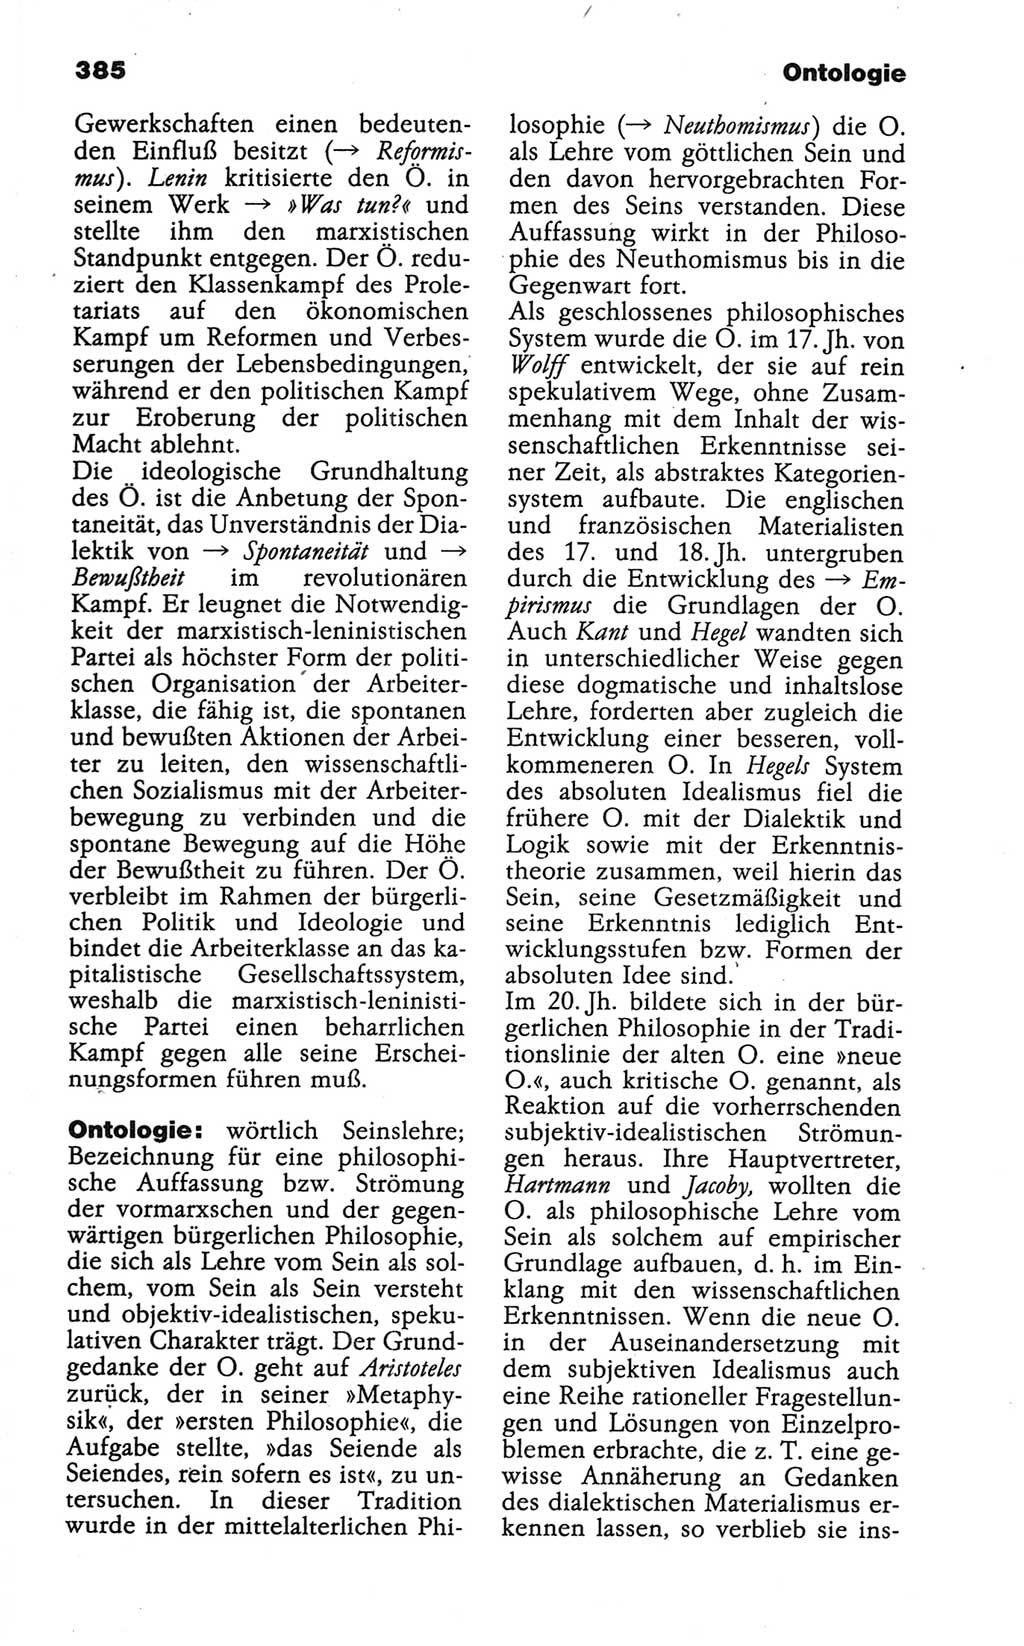 Wörterbuch der marxistisch-leninistischen Philosophie [Deutsche Demokratische Republik (DDR)] 1986, Seite 385 (Wb. ML Phil. DDR 1986, S. 385)